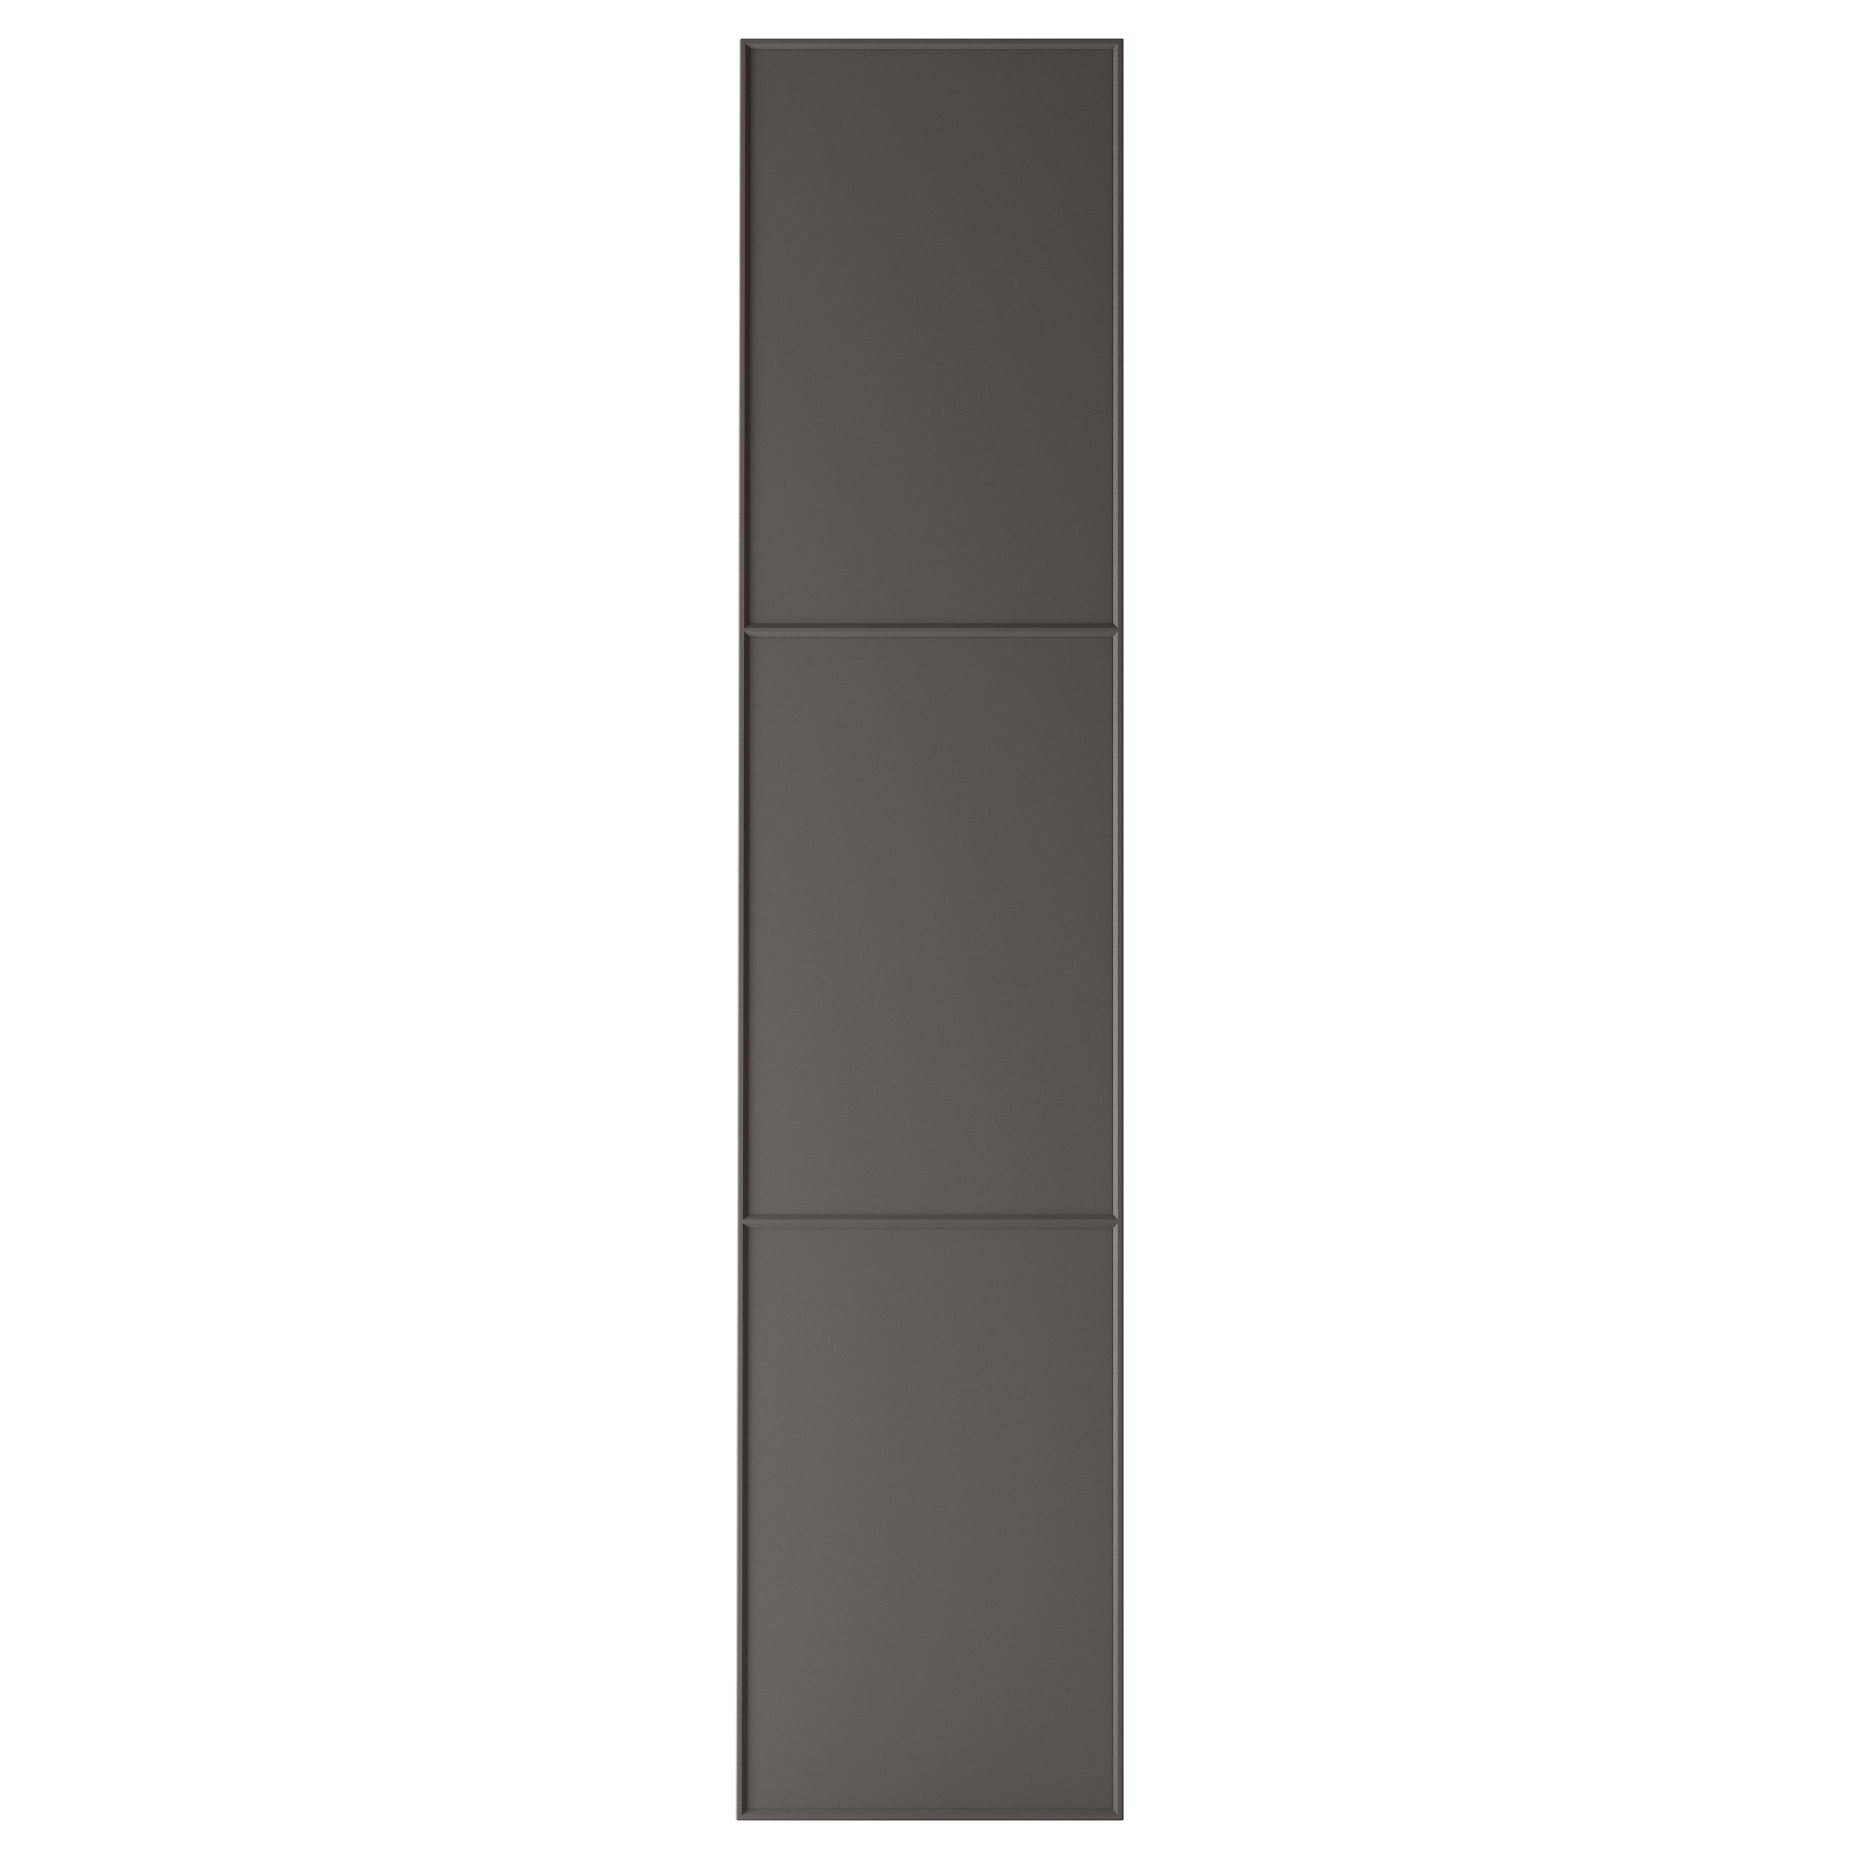 MERAKER, door with hinges, 50x229 cm, 791.228.24